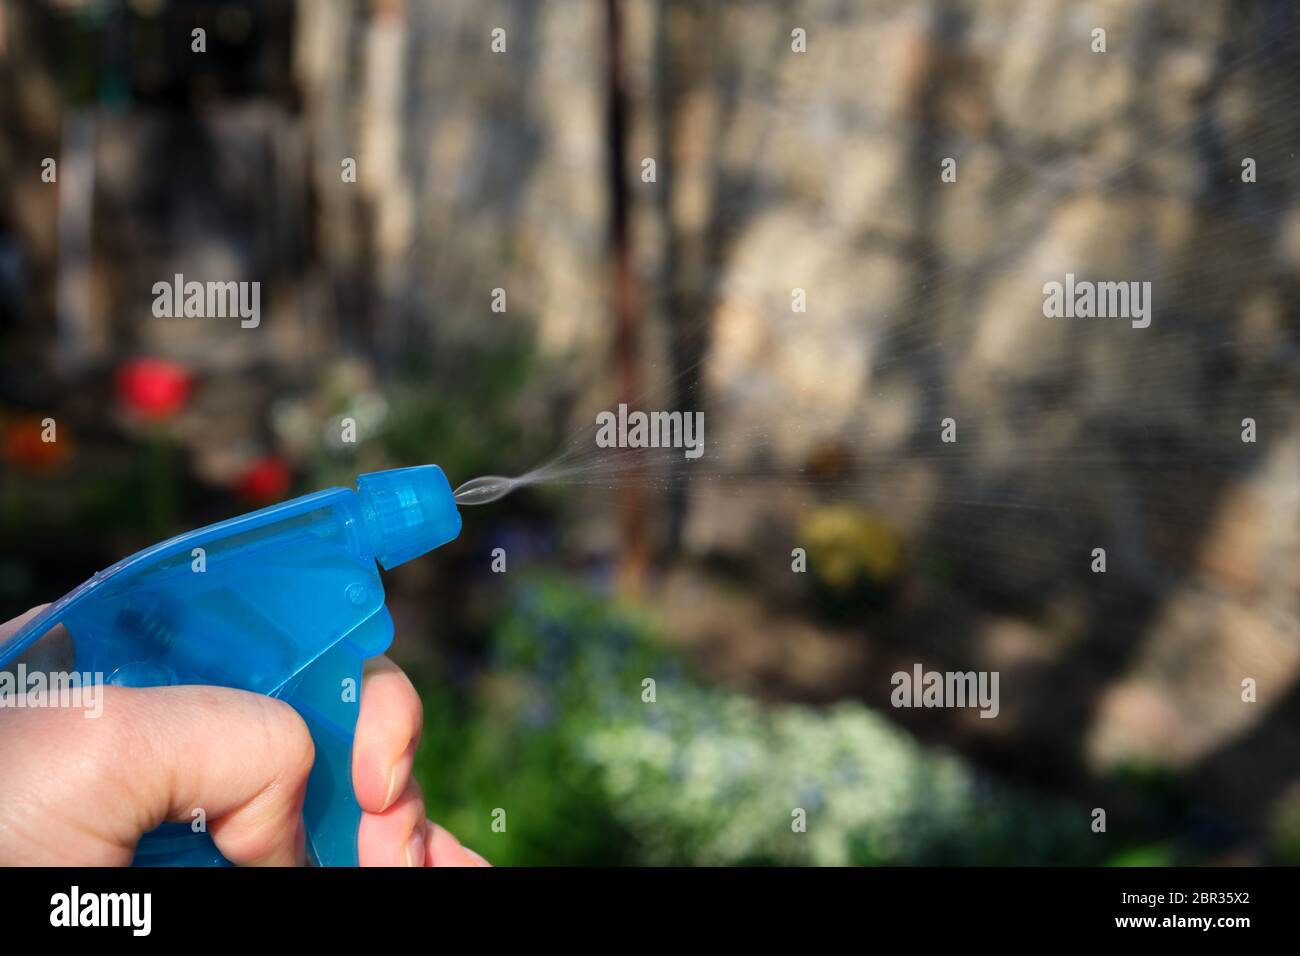 Femmina lato tenendo un blu bottiglia in plastica con liquidi e impianti di spruzzatura con prodotti chimici per uccidere insetti e parassiti, giornata di primavera Foto Stock